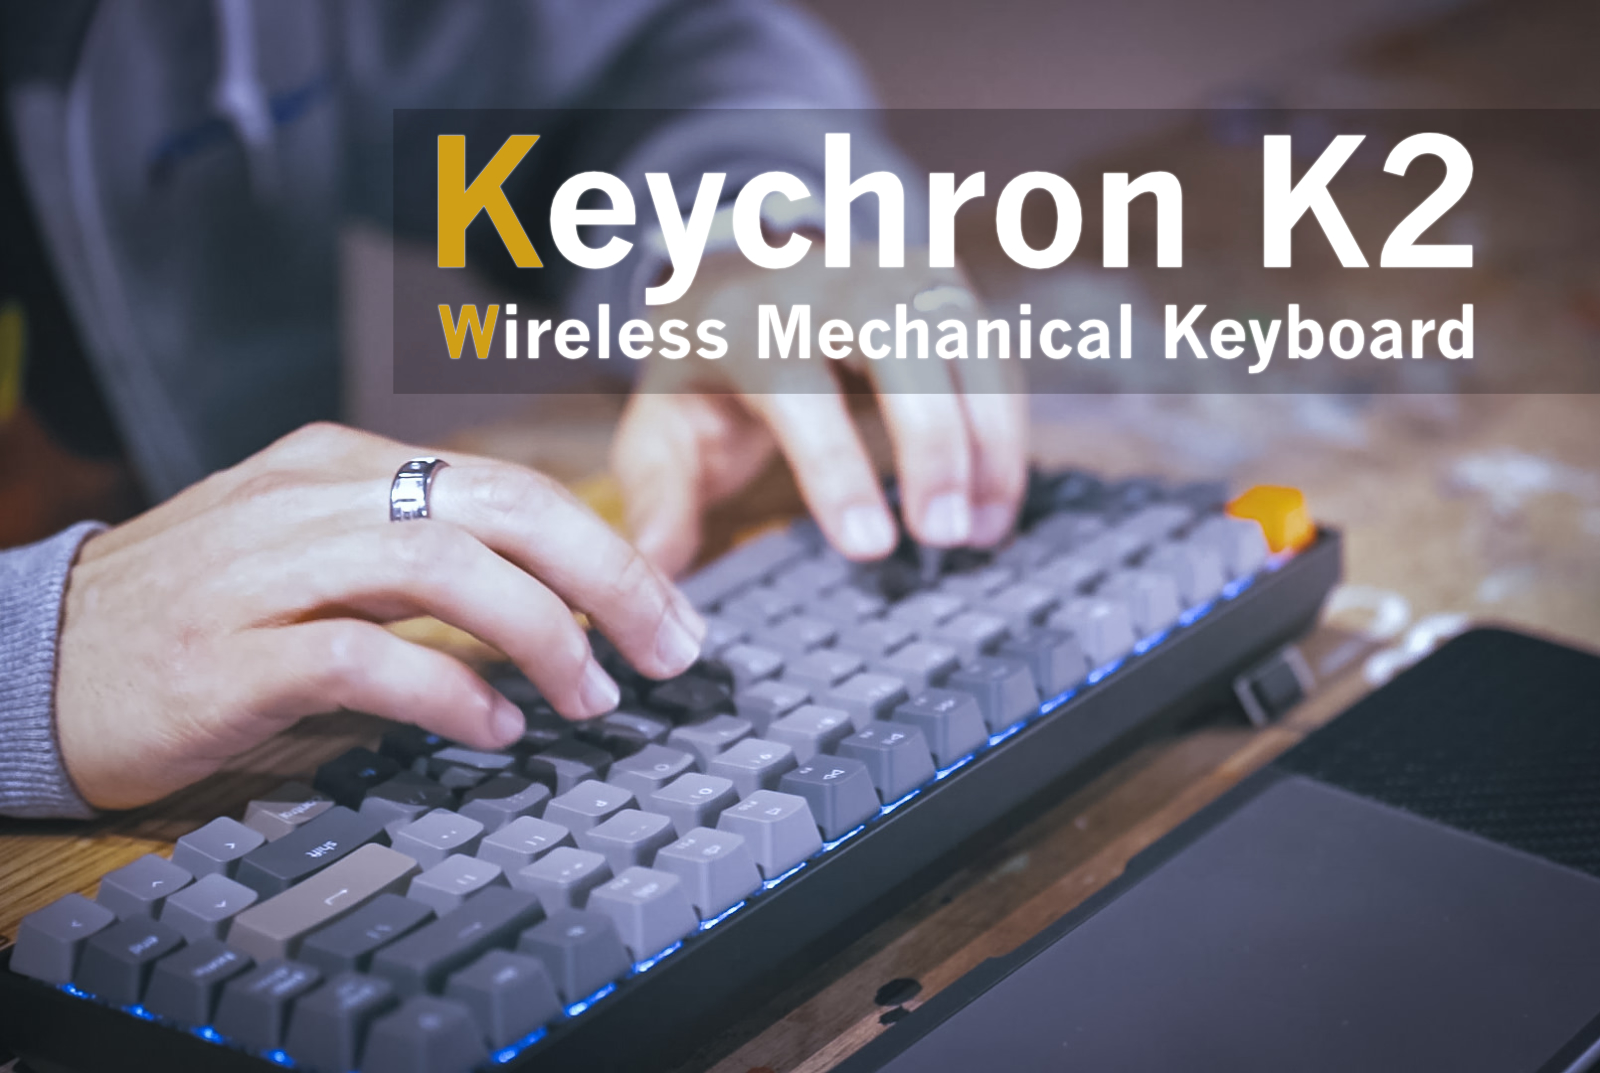 Keychron-K2-Wireless-Mechanical-Keyboard-Review